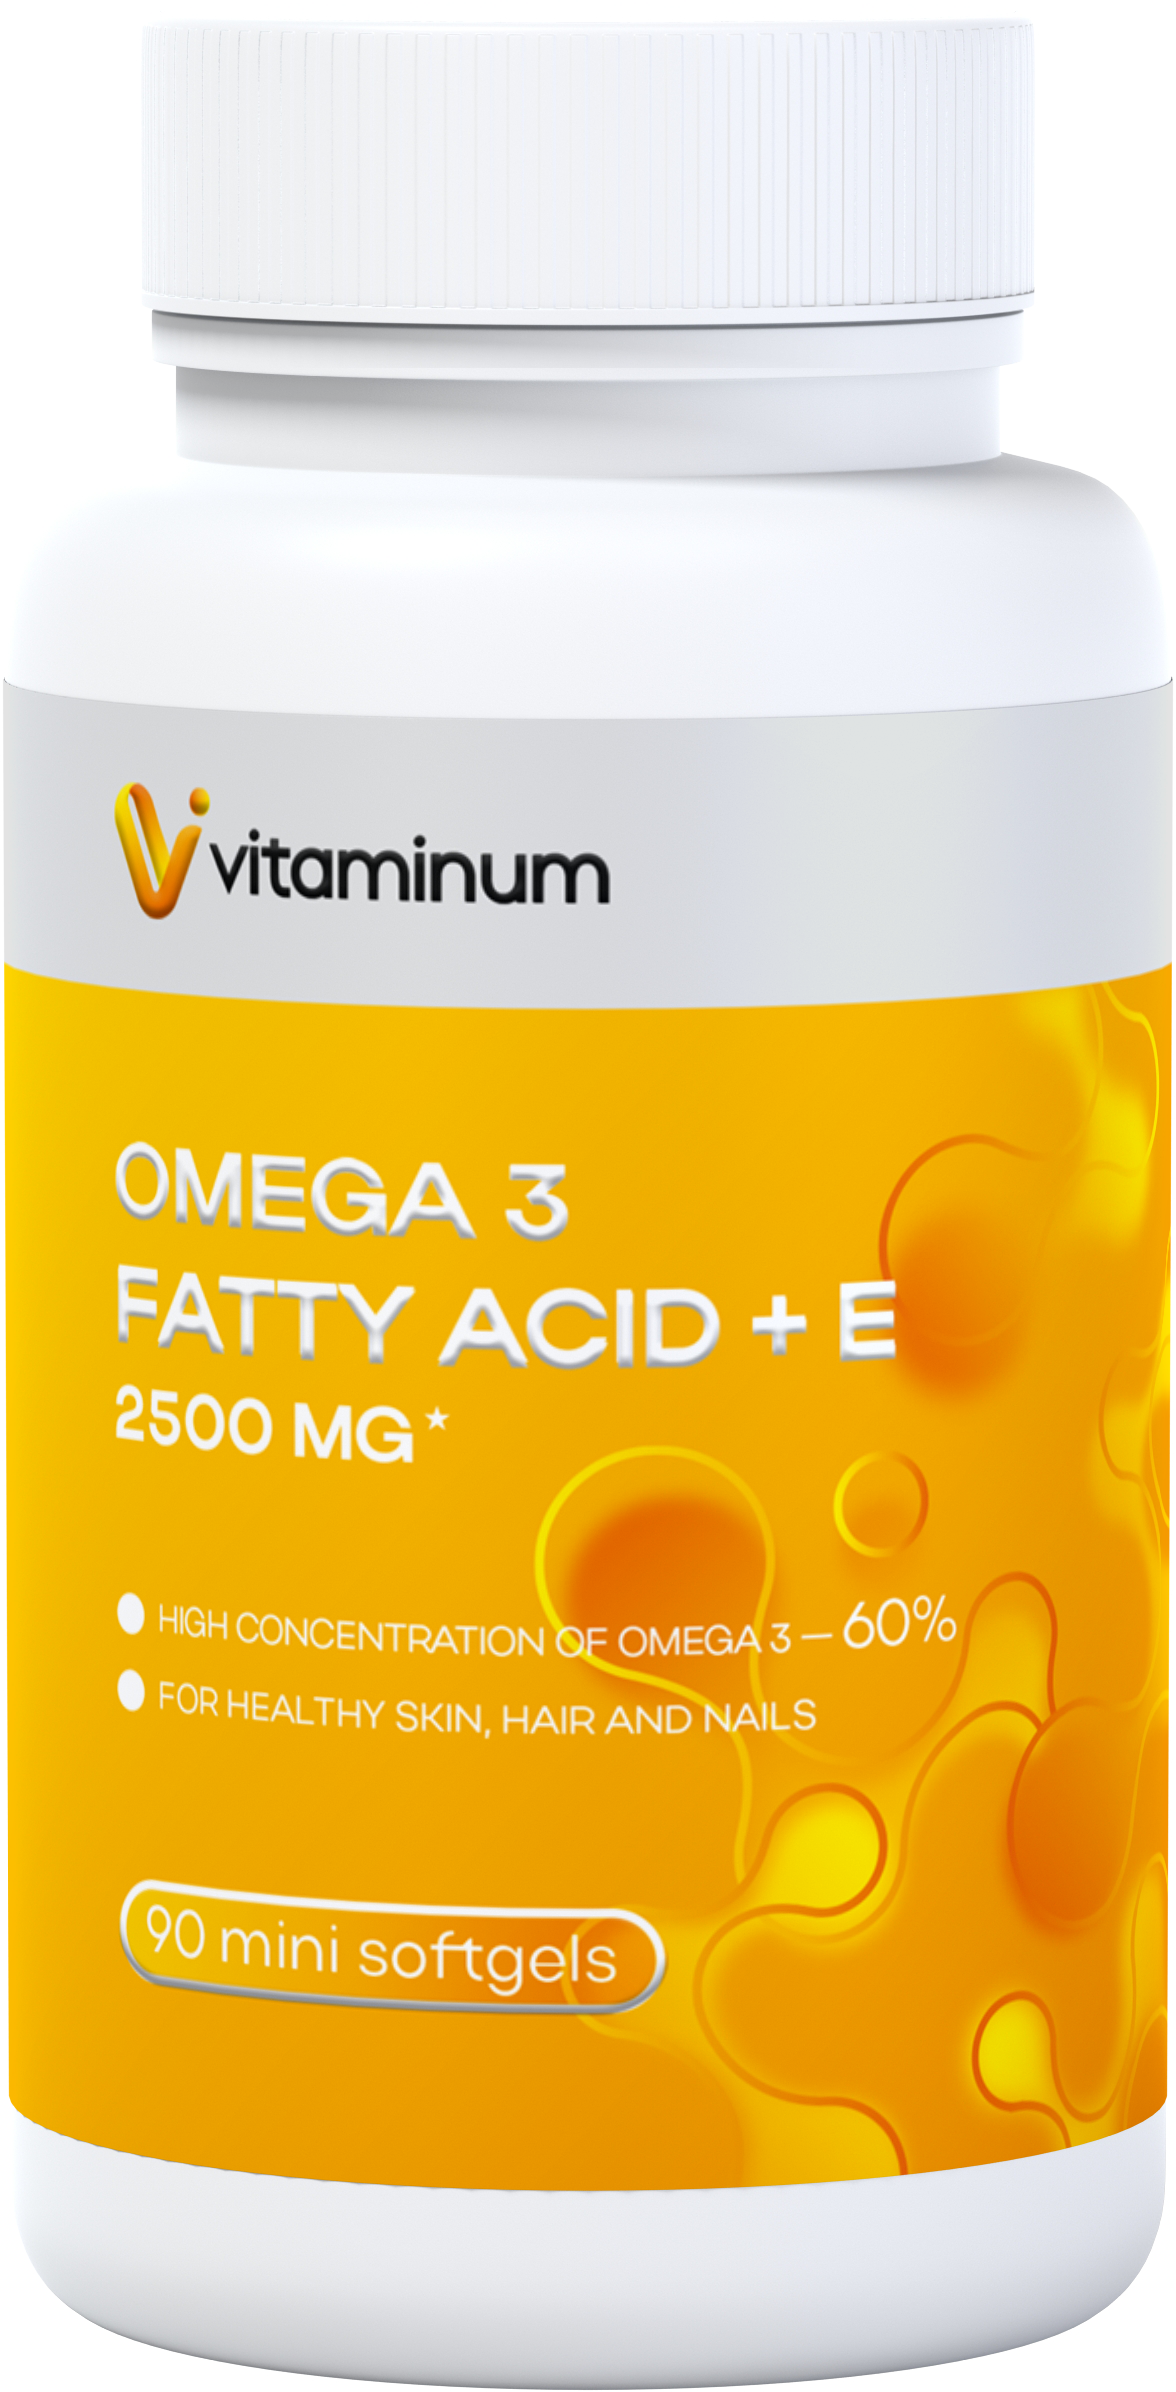  Vitaminum ОМЕГА 3 60% + витамин Е (2500 MG*) 90 капсул 700 мг   в Абакане